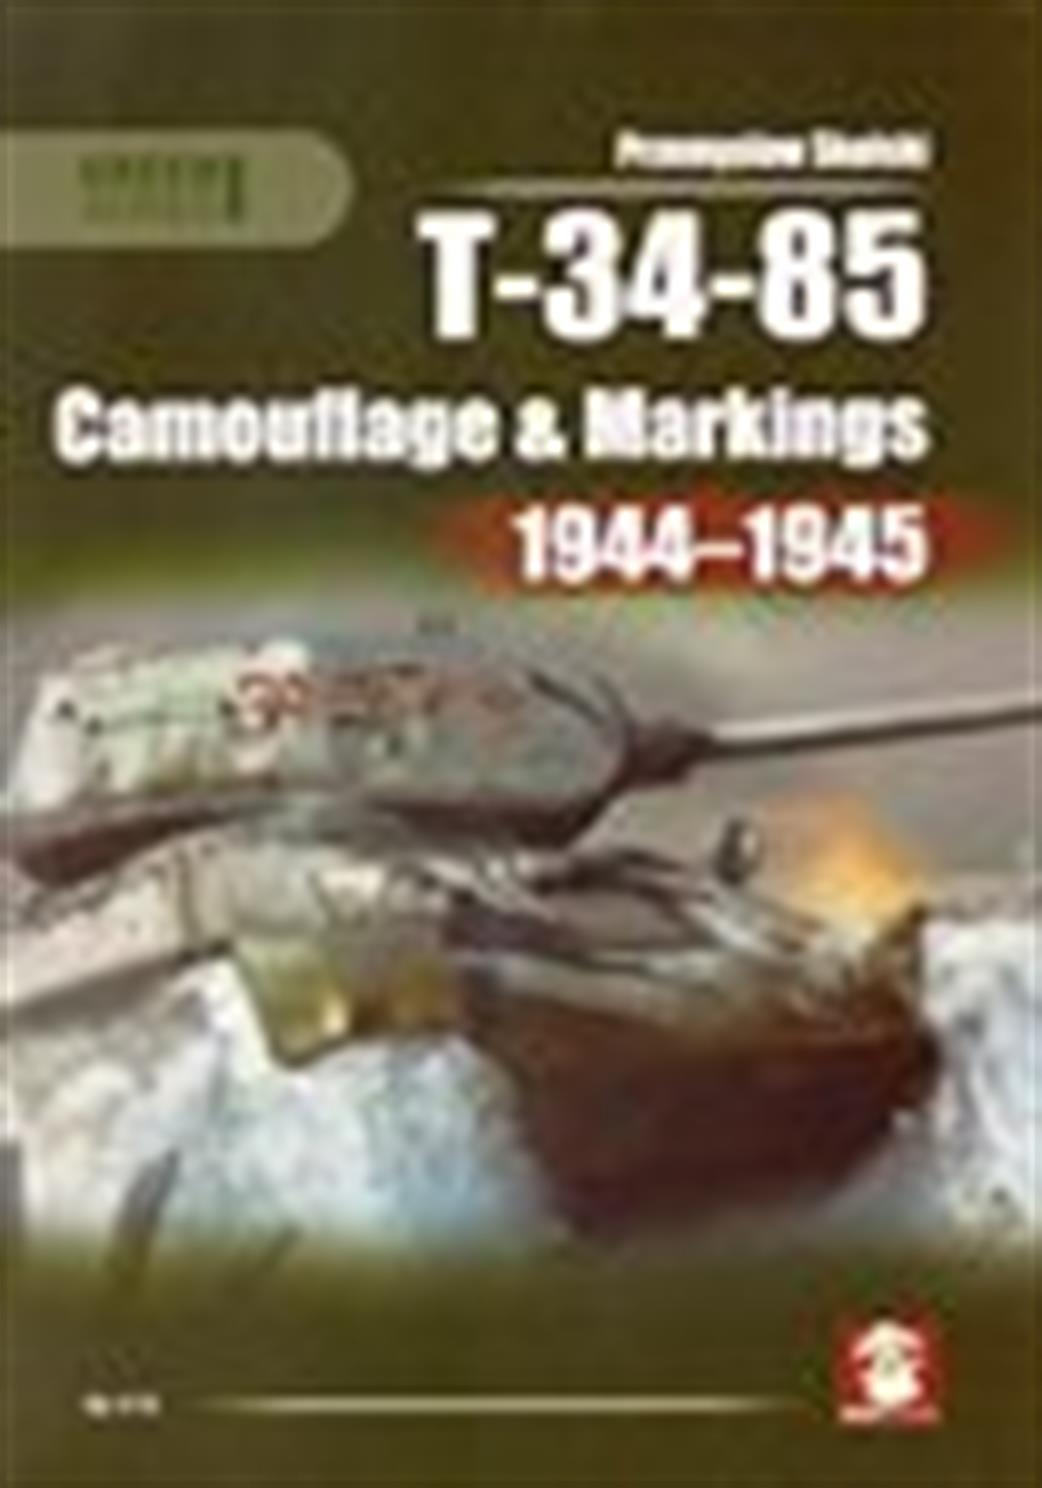 9788363678661 T-34-85 Camouflage & Markings Book 1944-1945 by Przemyslaw Skulski